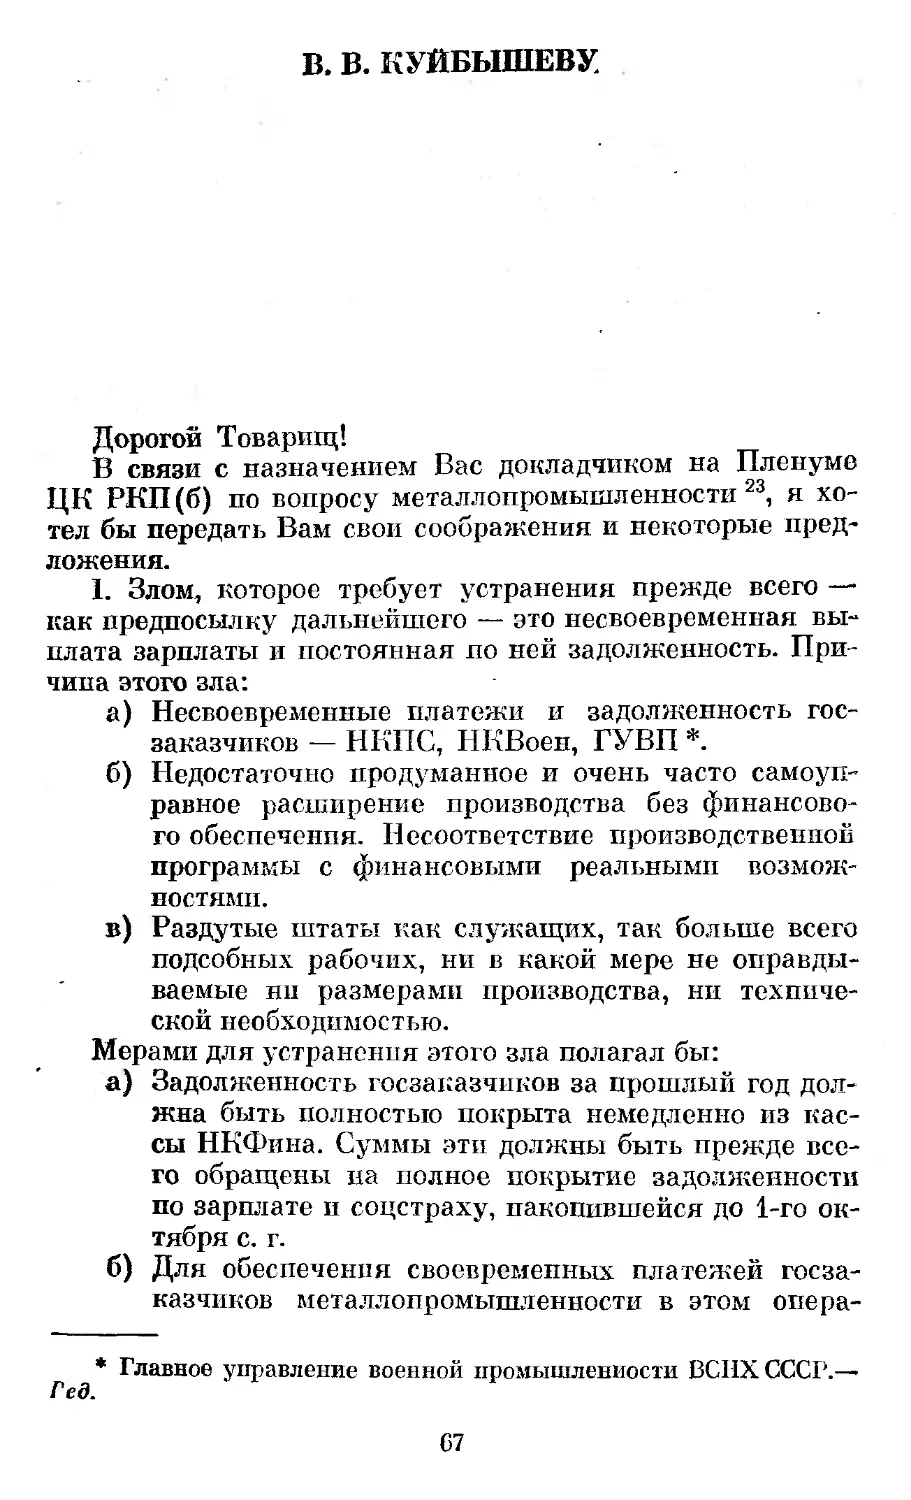 В. В. Куйбышеву. 20 октября 1924 г